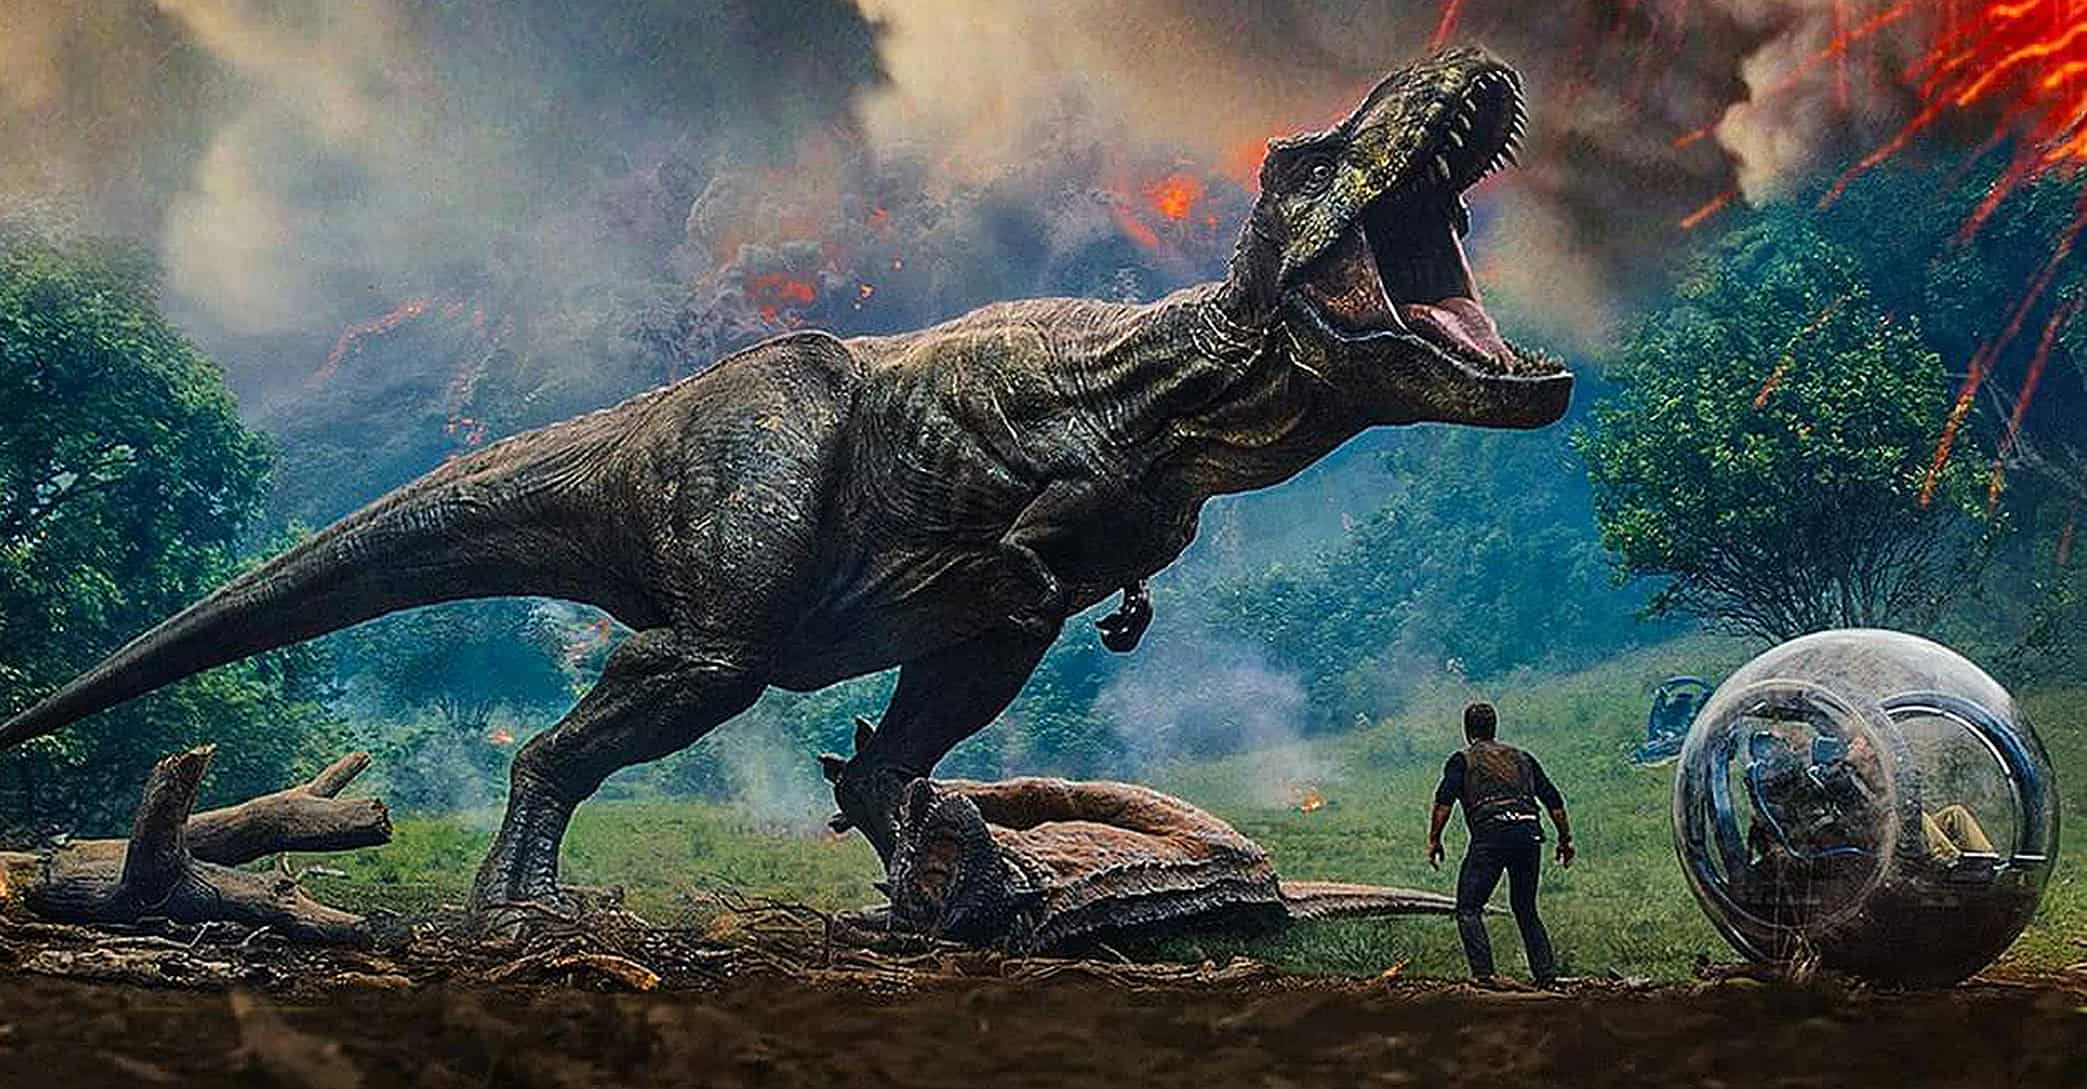 Jurassic World: Fallen Kingdom instal the new